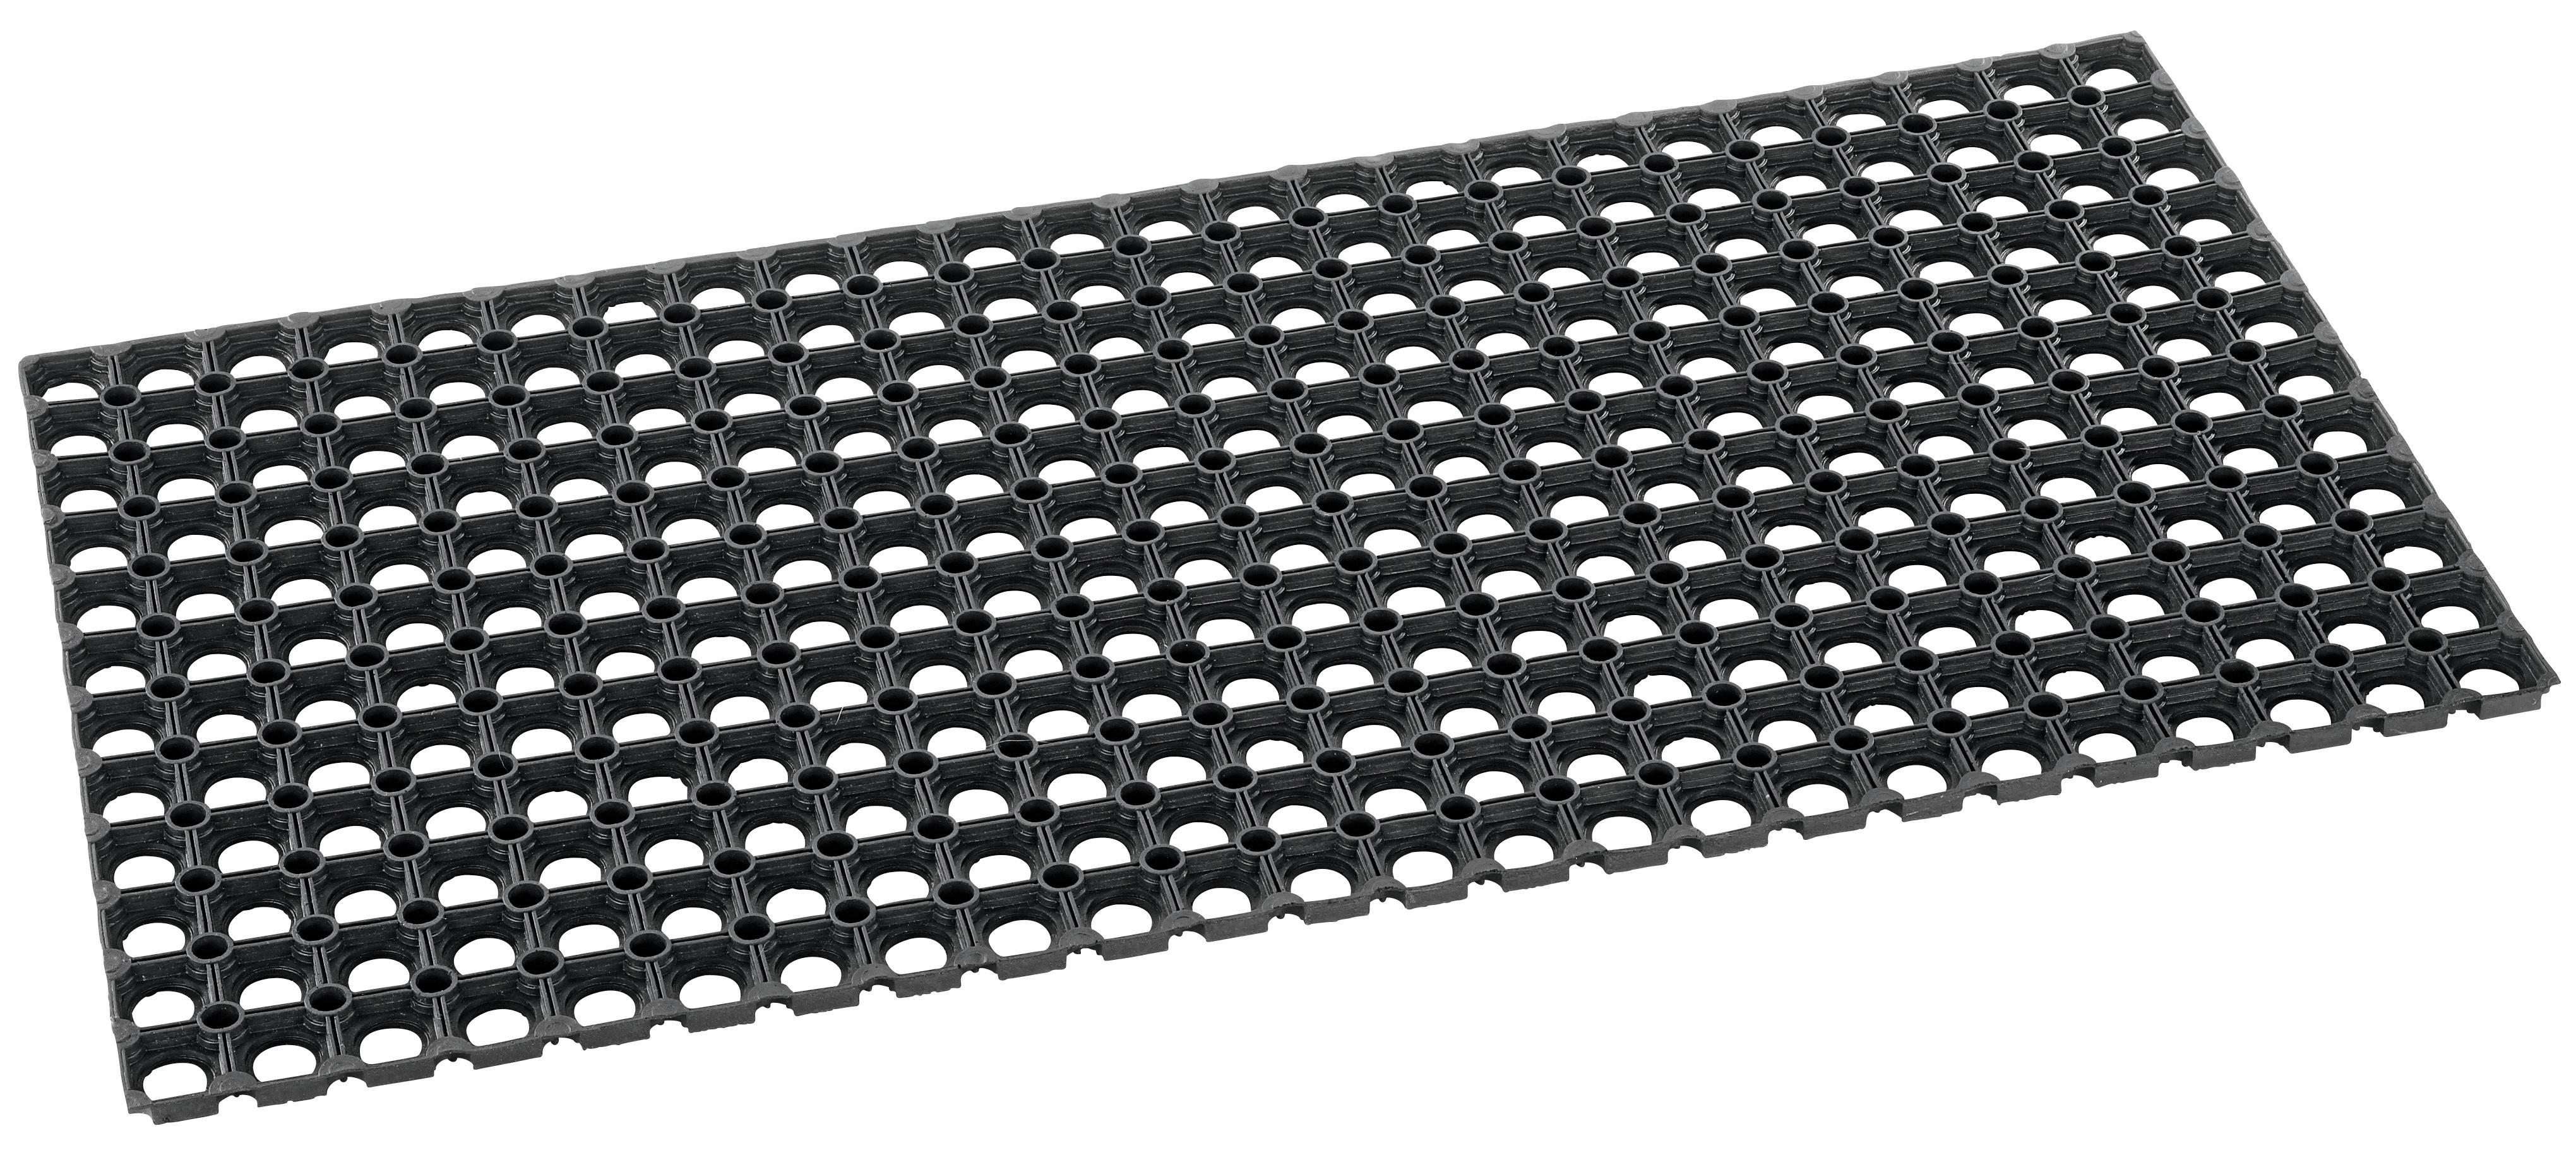 Fußmatte Allegro 40 x 70 cm schwarz Gummimatte mit Anlaufkante für